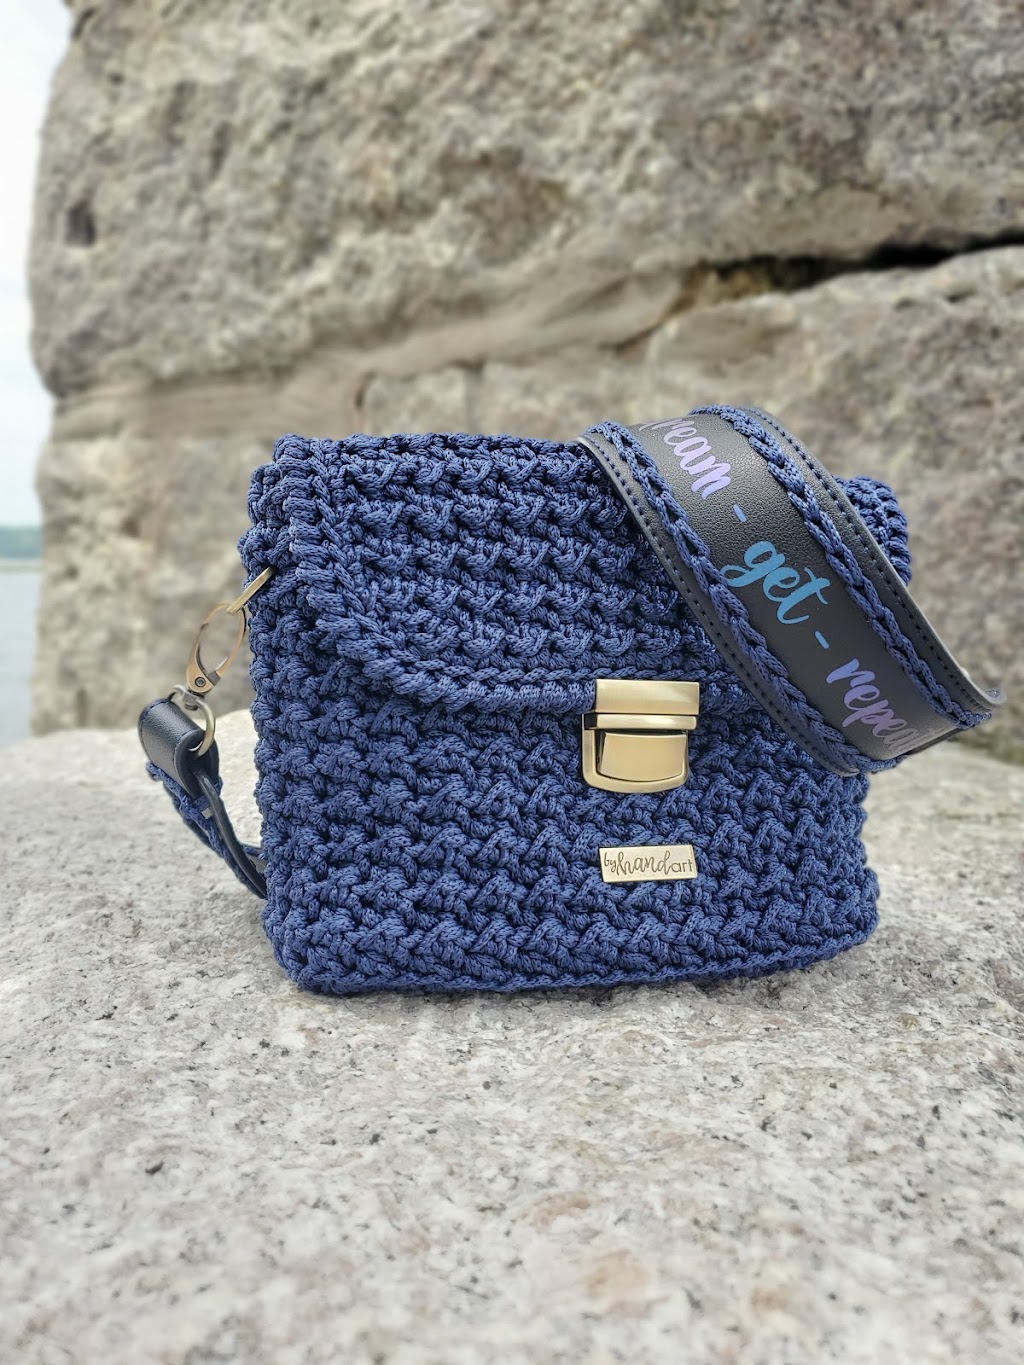 Byhandart | Handbags made by artisans | 14 Jackson St, Glen Cove, NY 11542, USA | Phone: (516) 303-5473